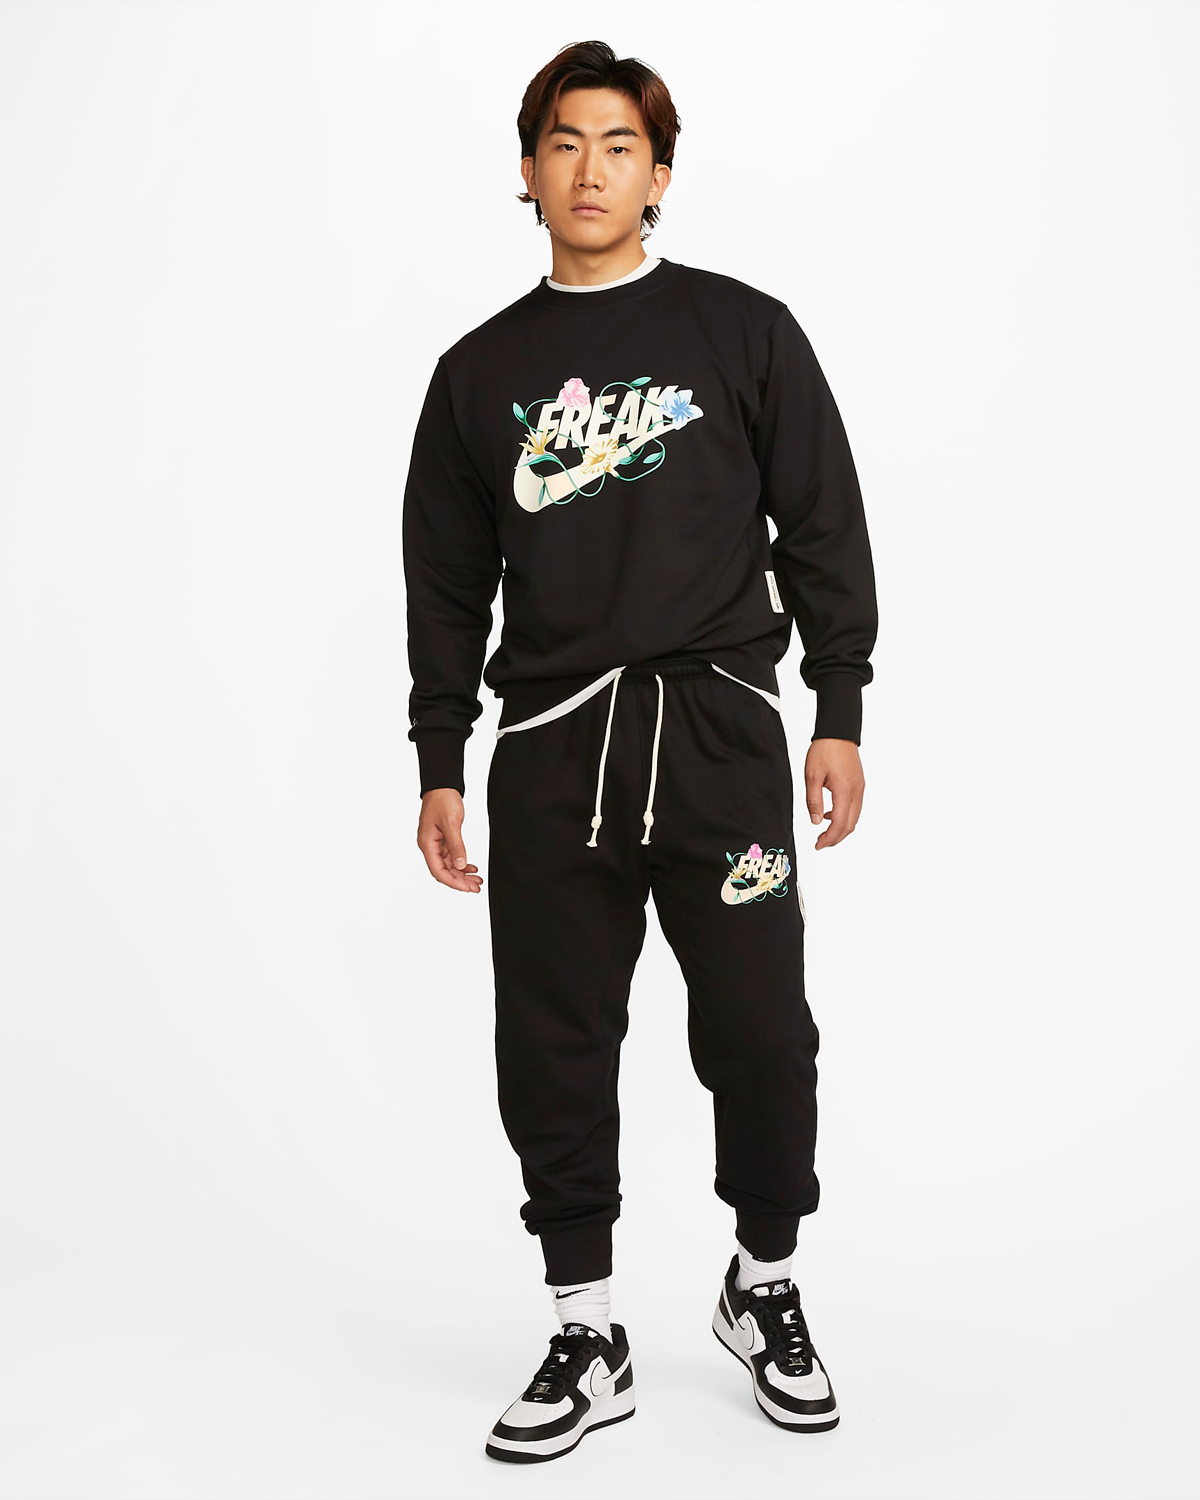 Nike-Giannis-Freak-Standard-Issue-Crew-Sweatshirt-Pants-Black